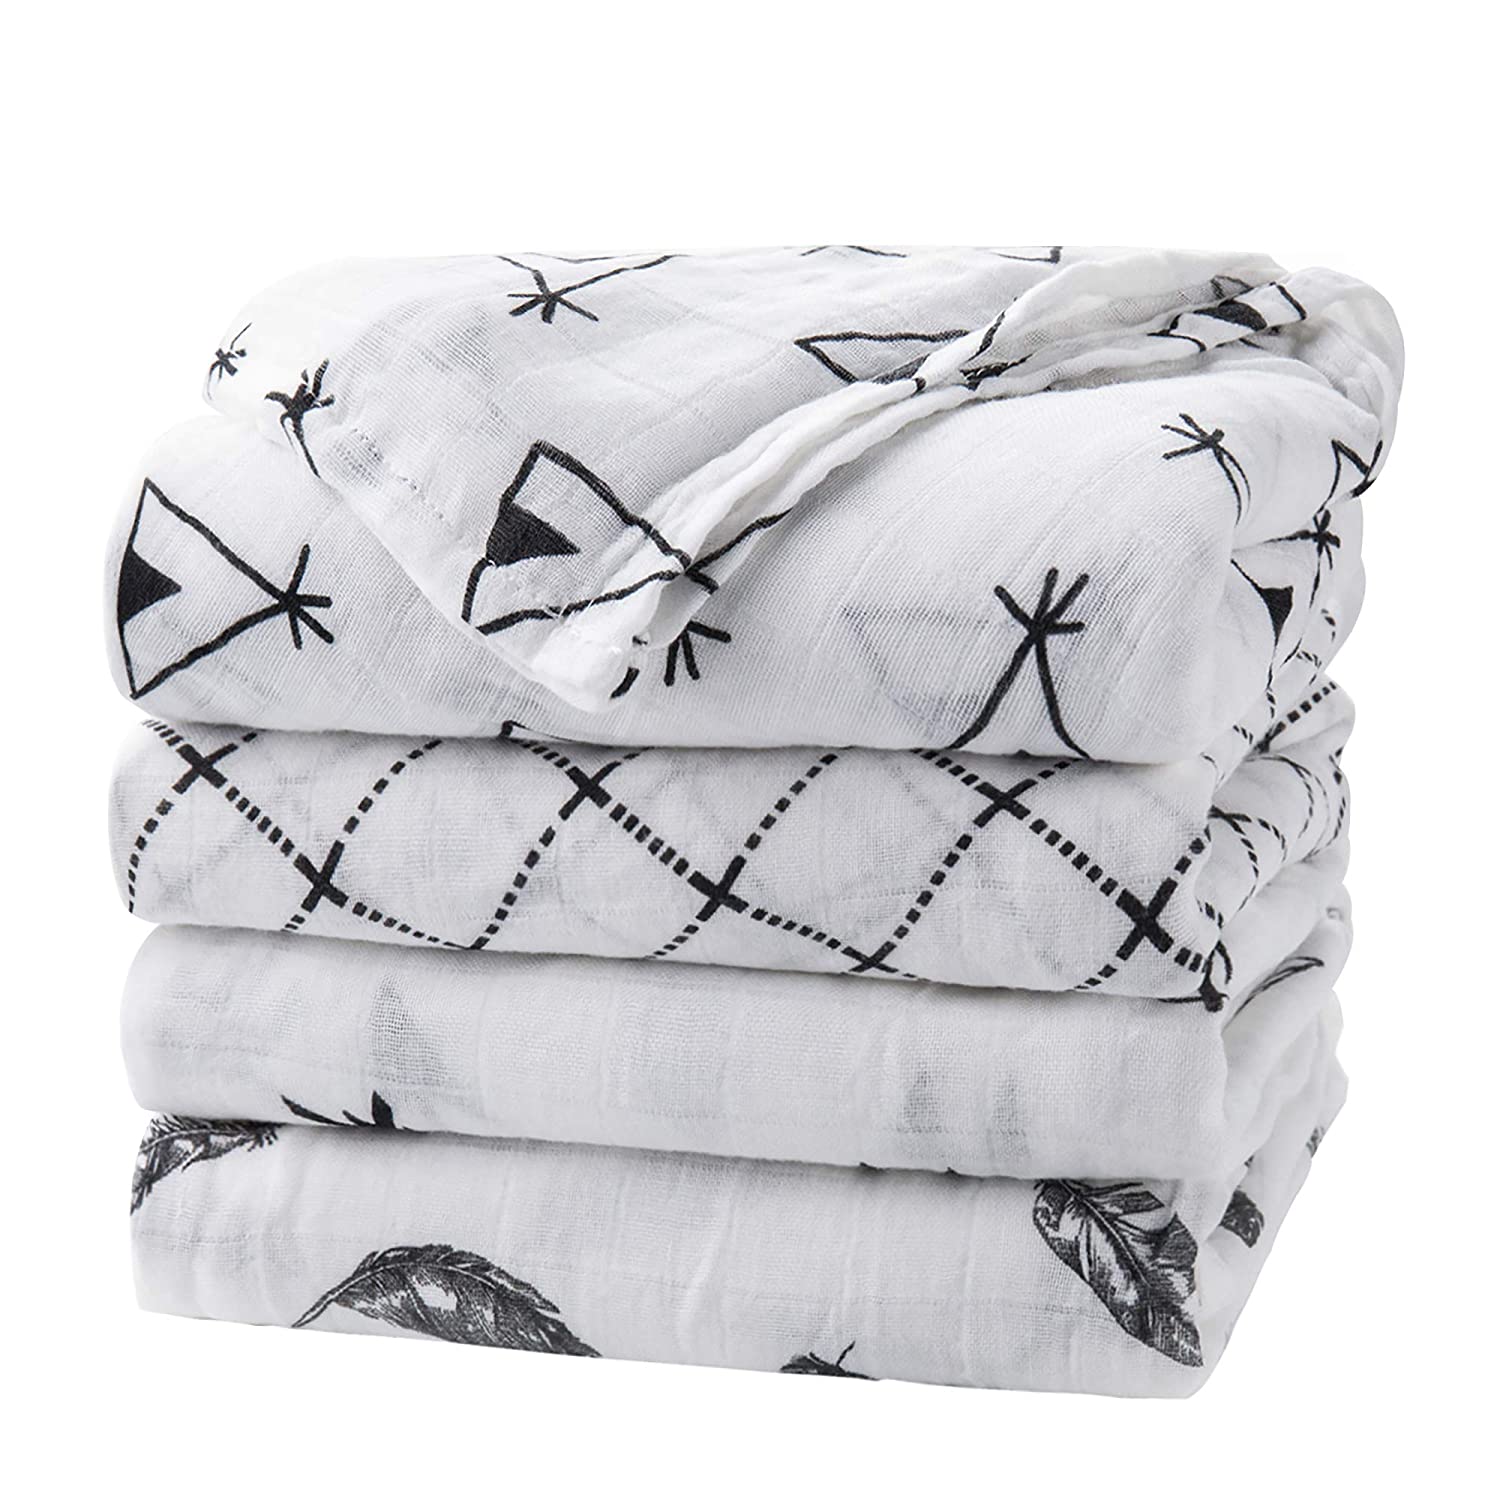 upsimples Sensitive Skin Bedtime Swaddle Blankets, 4-Pack